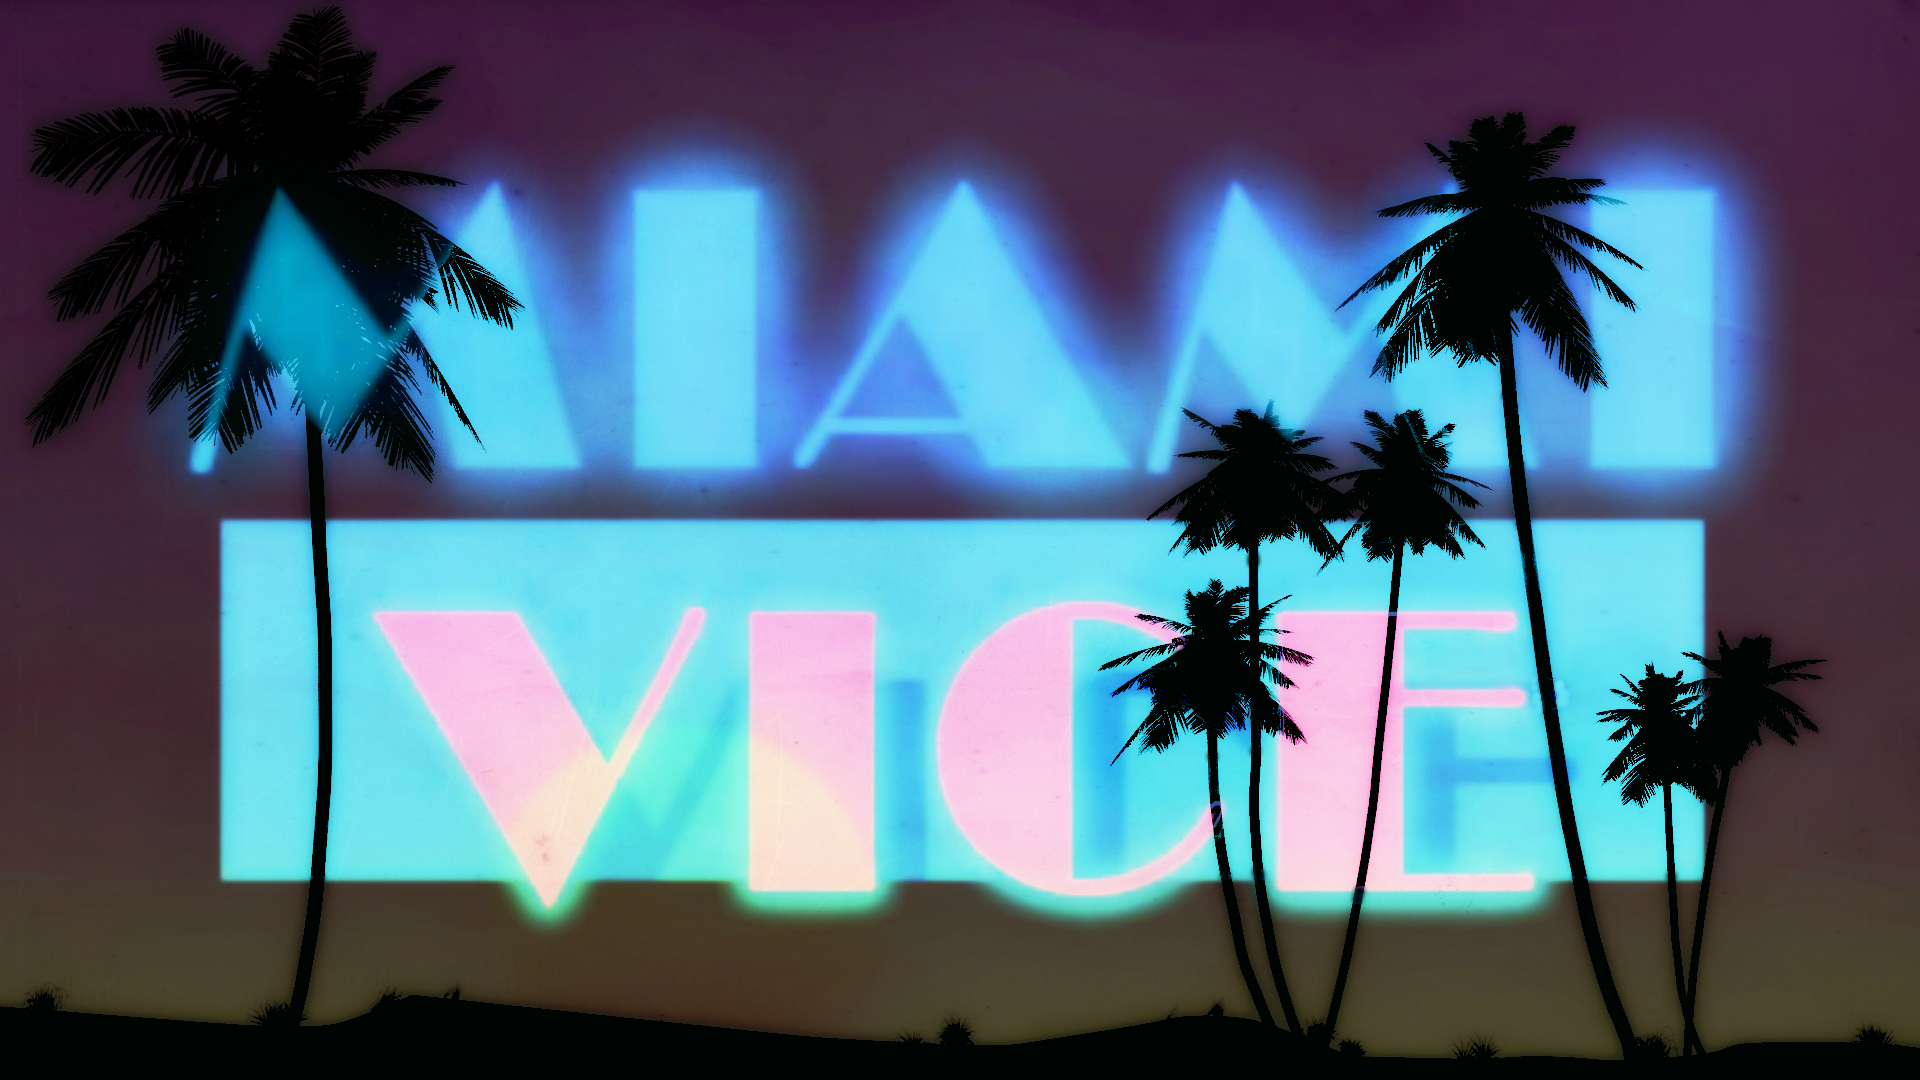 TV Show Miami Vice Wallpaper